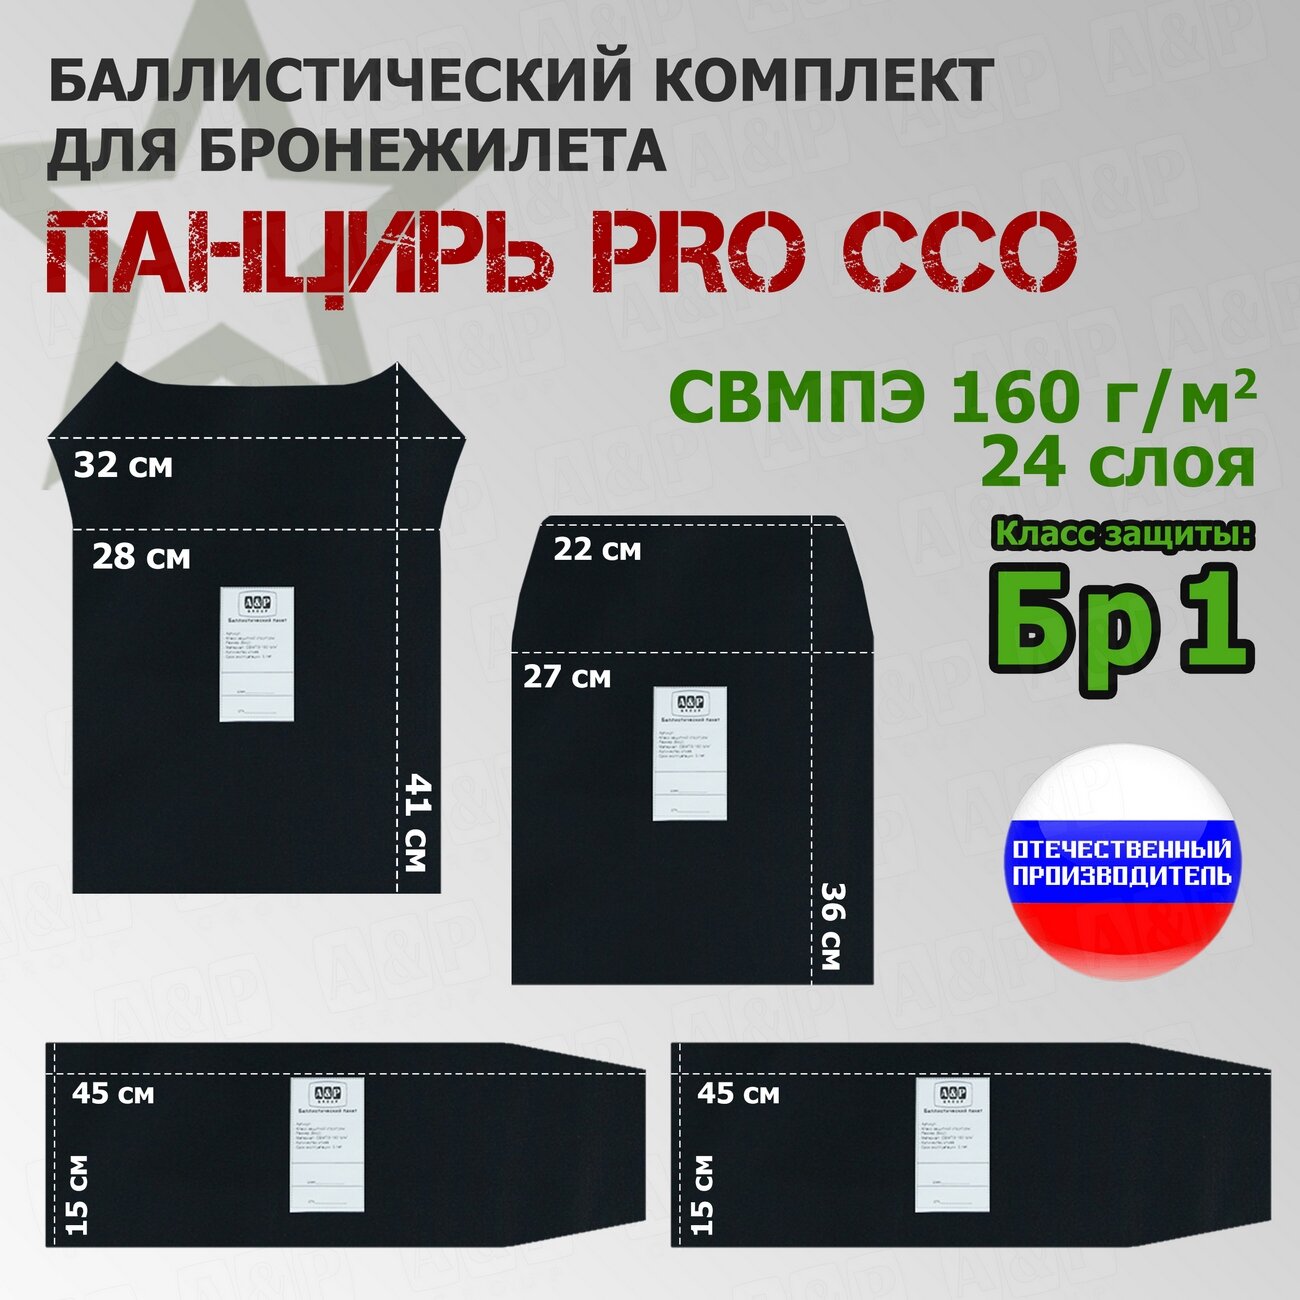 Комплект баллистических пакетов для плитника "Панцирь PRO" от ССО. Класс защитной структуры Бр 1.